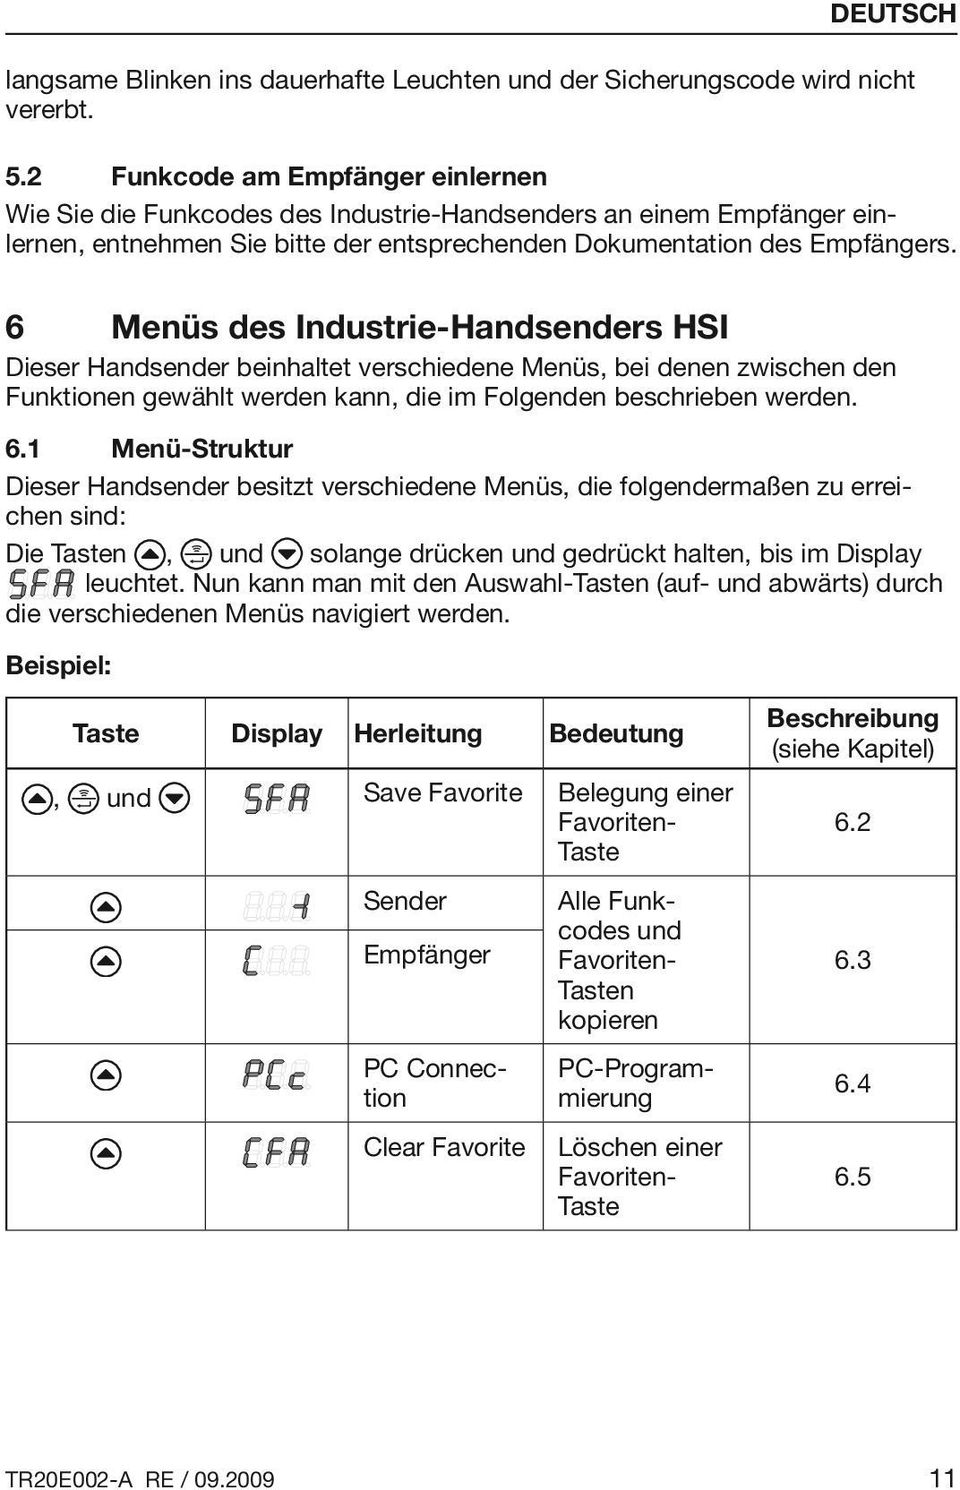 6 Menüs des Industrie-Handsenders HSI Dieser Handsender beinhaltet verschiedene Menüs, bei denen zwischen den Funktionen gewählt werden kann, die im Folgenden beschrieben werden. 6.